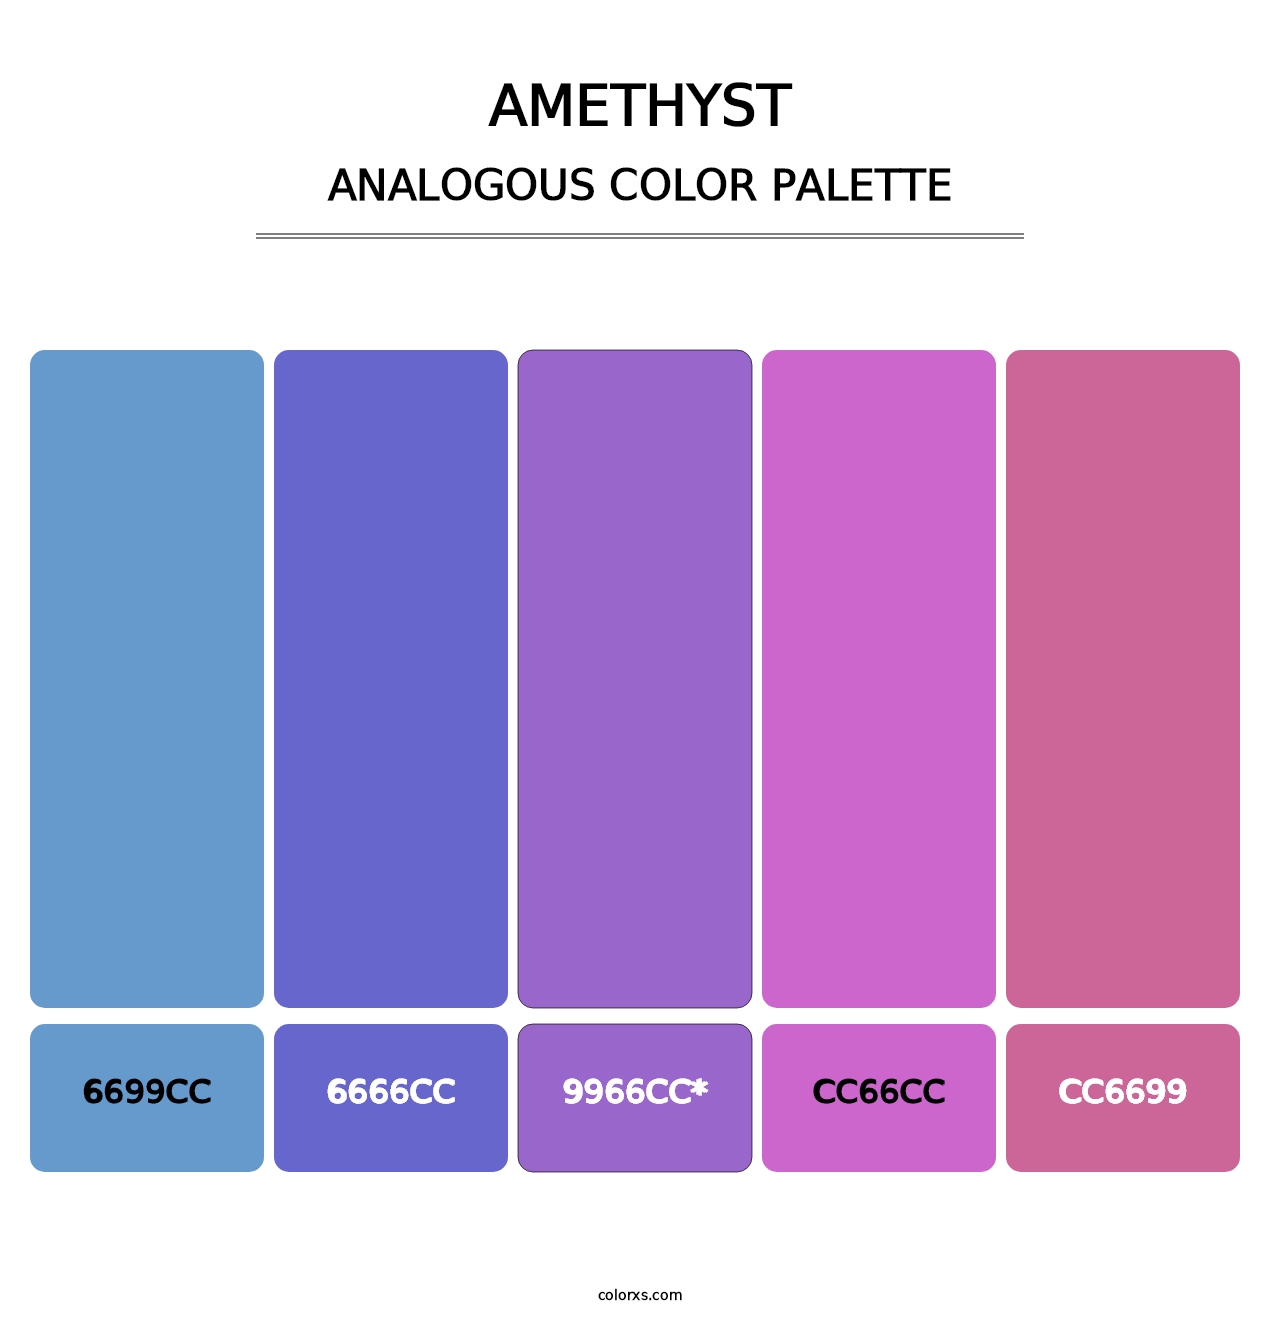 Amethyst - Analogous Color Palette